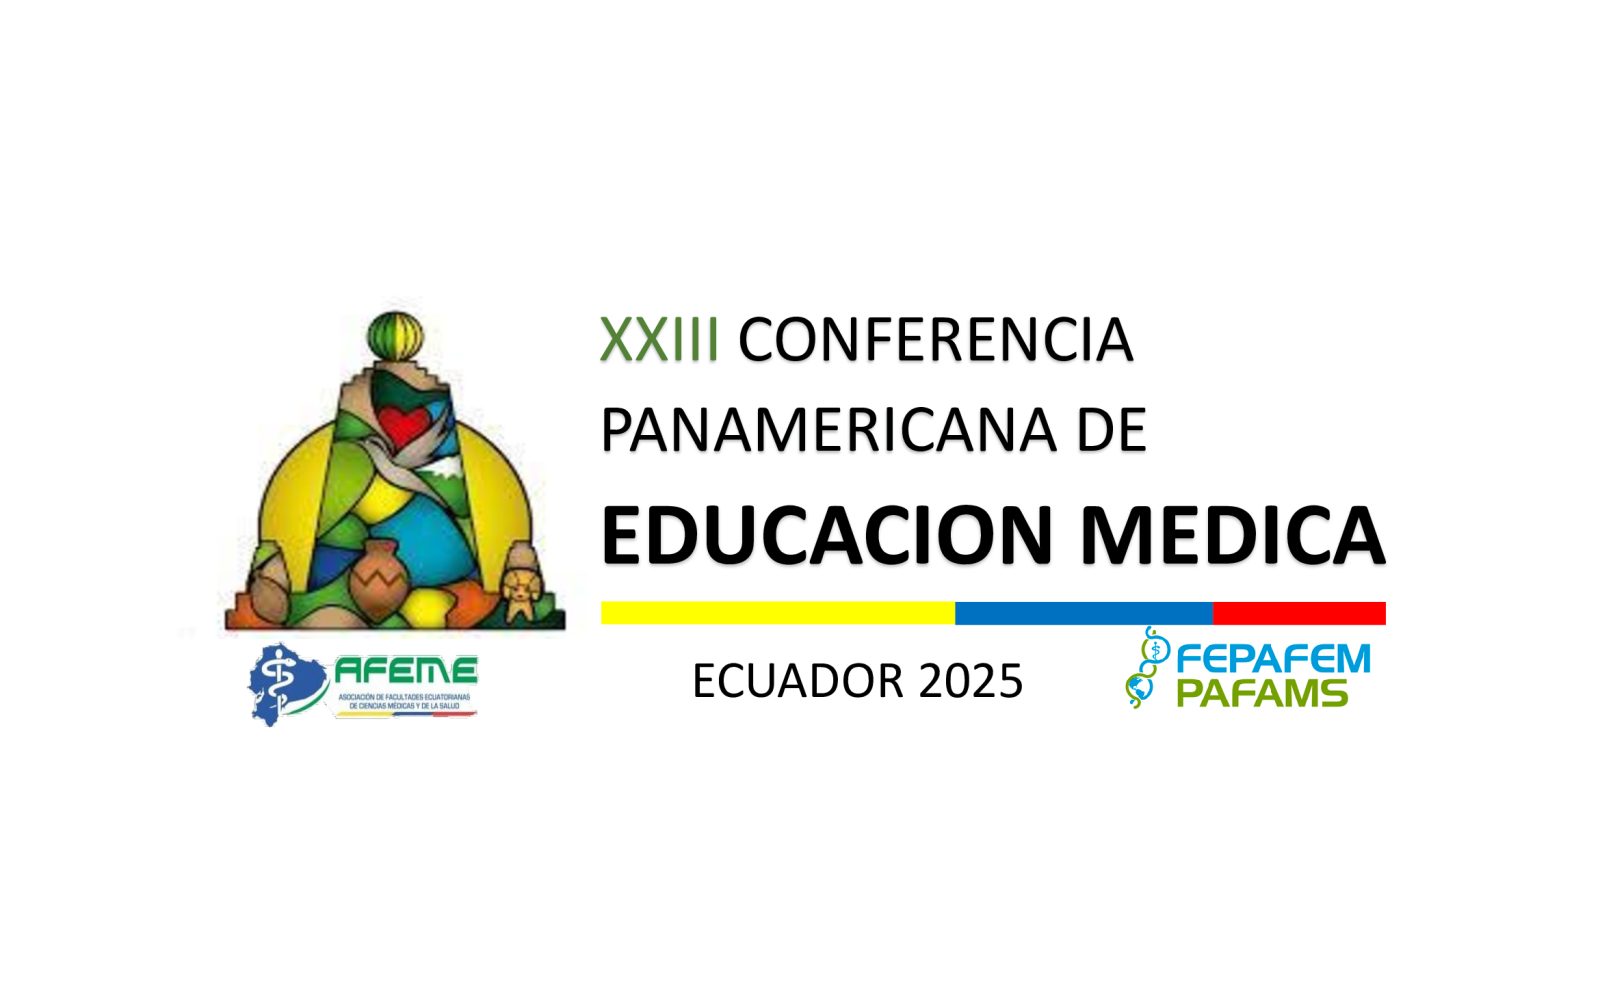 ECUADOR SEDE DE LA XXIII CONFERENCIA PANAMERICANA DE EDUCACIÓN MEDICA 2025